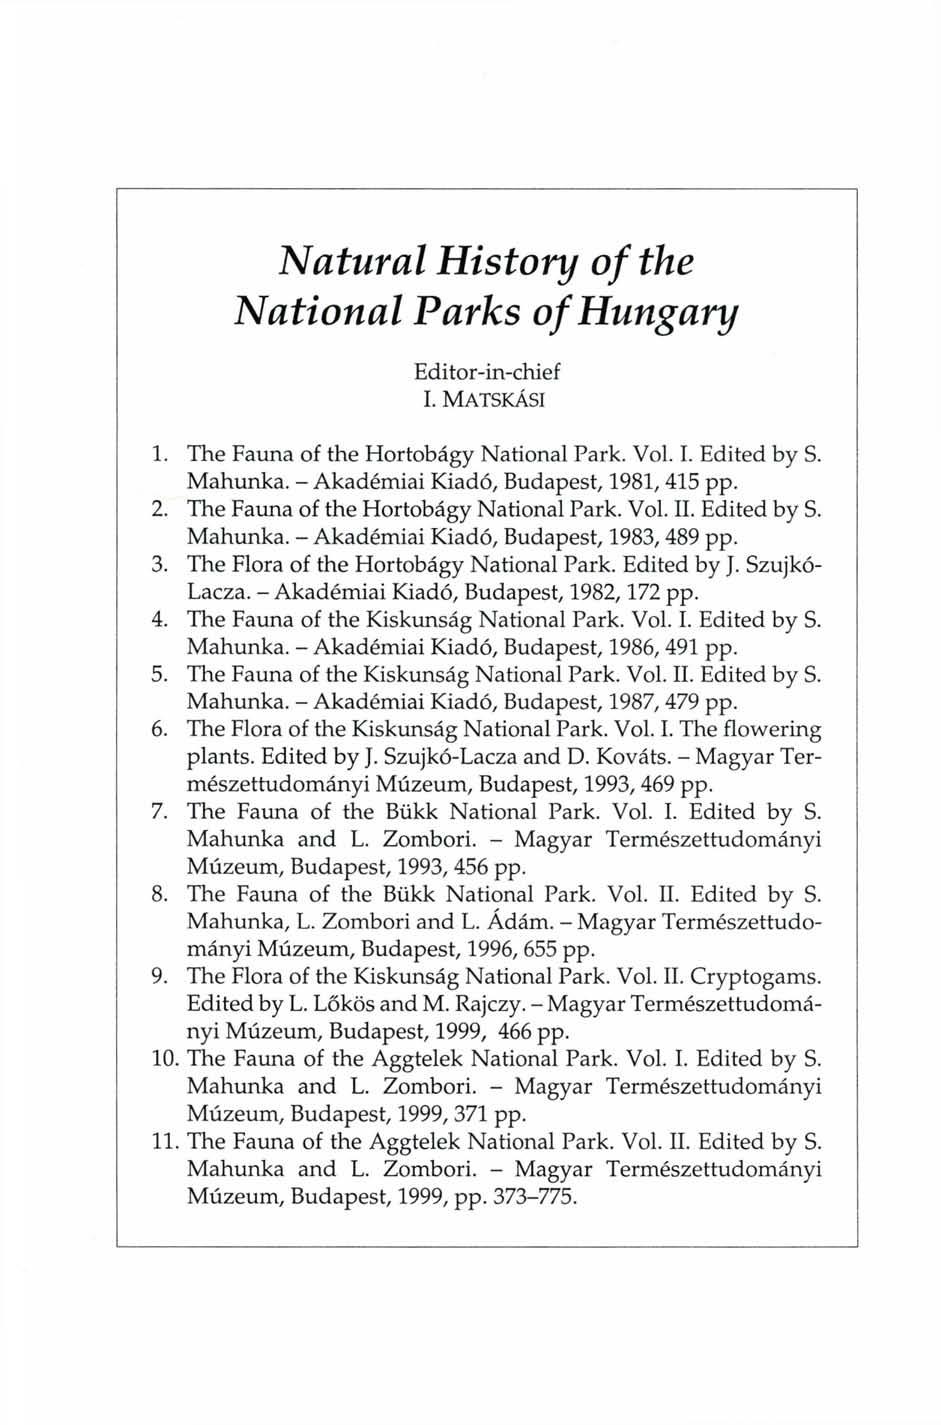 Natural History of the National Parks of Hungary Editor-in-chief I. MATSKÁSI 1. The Fauna of the Hortobágy National Park. Vol. I. Edited by S. Mahunka. - Akadémiai Kiadó, Budapest, 1981, 415 pp. 2.